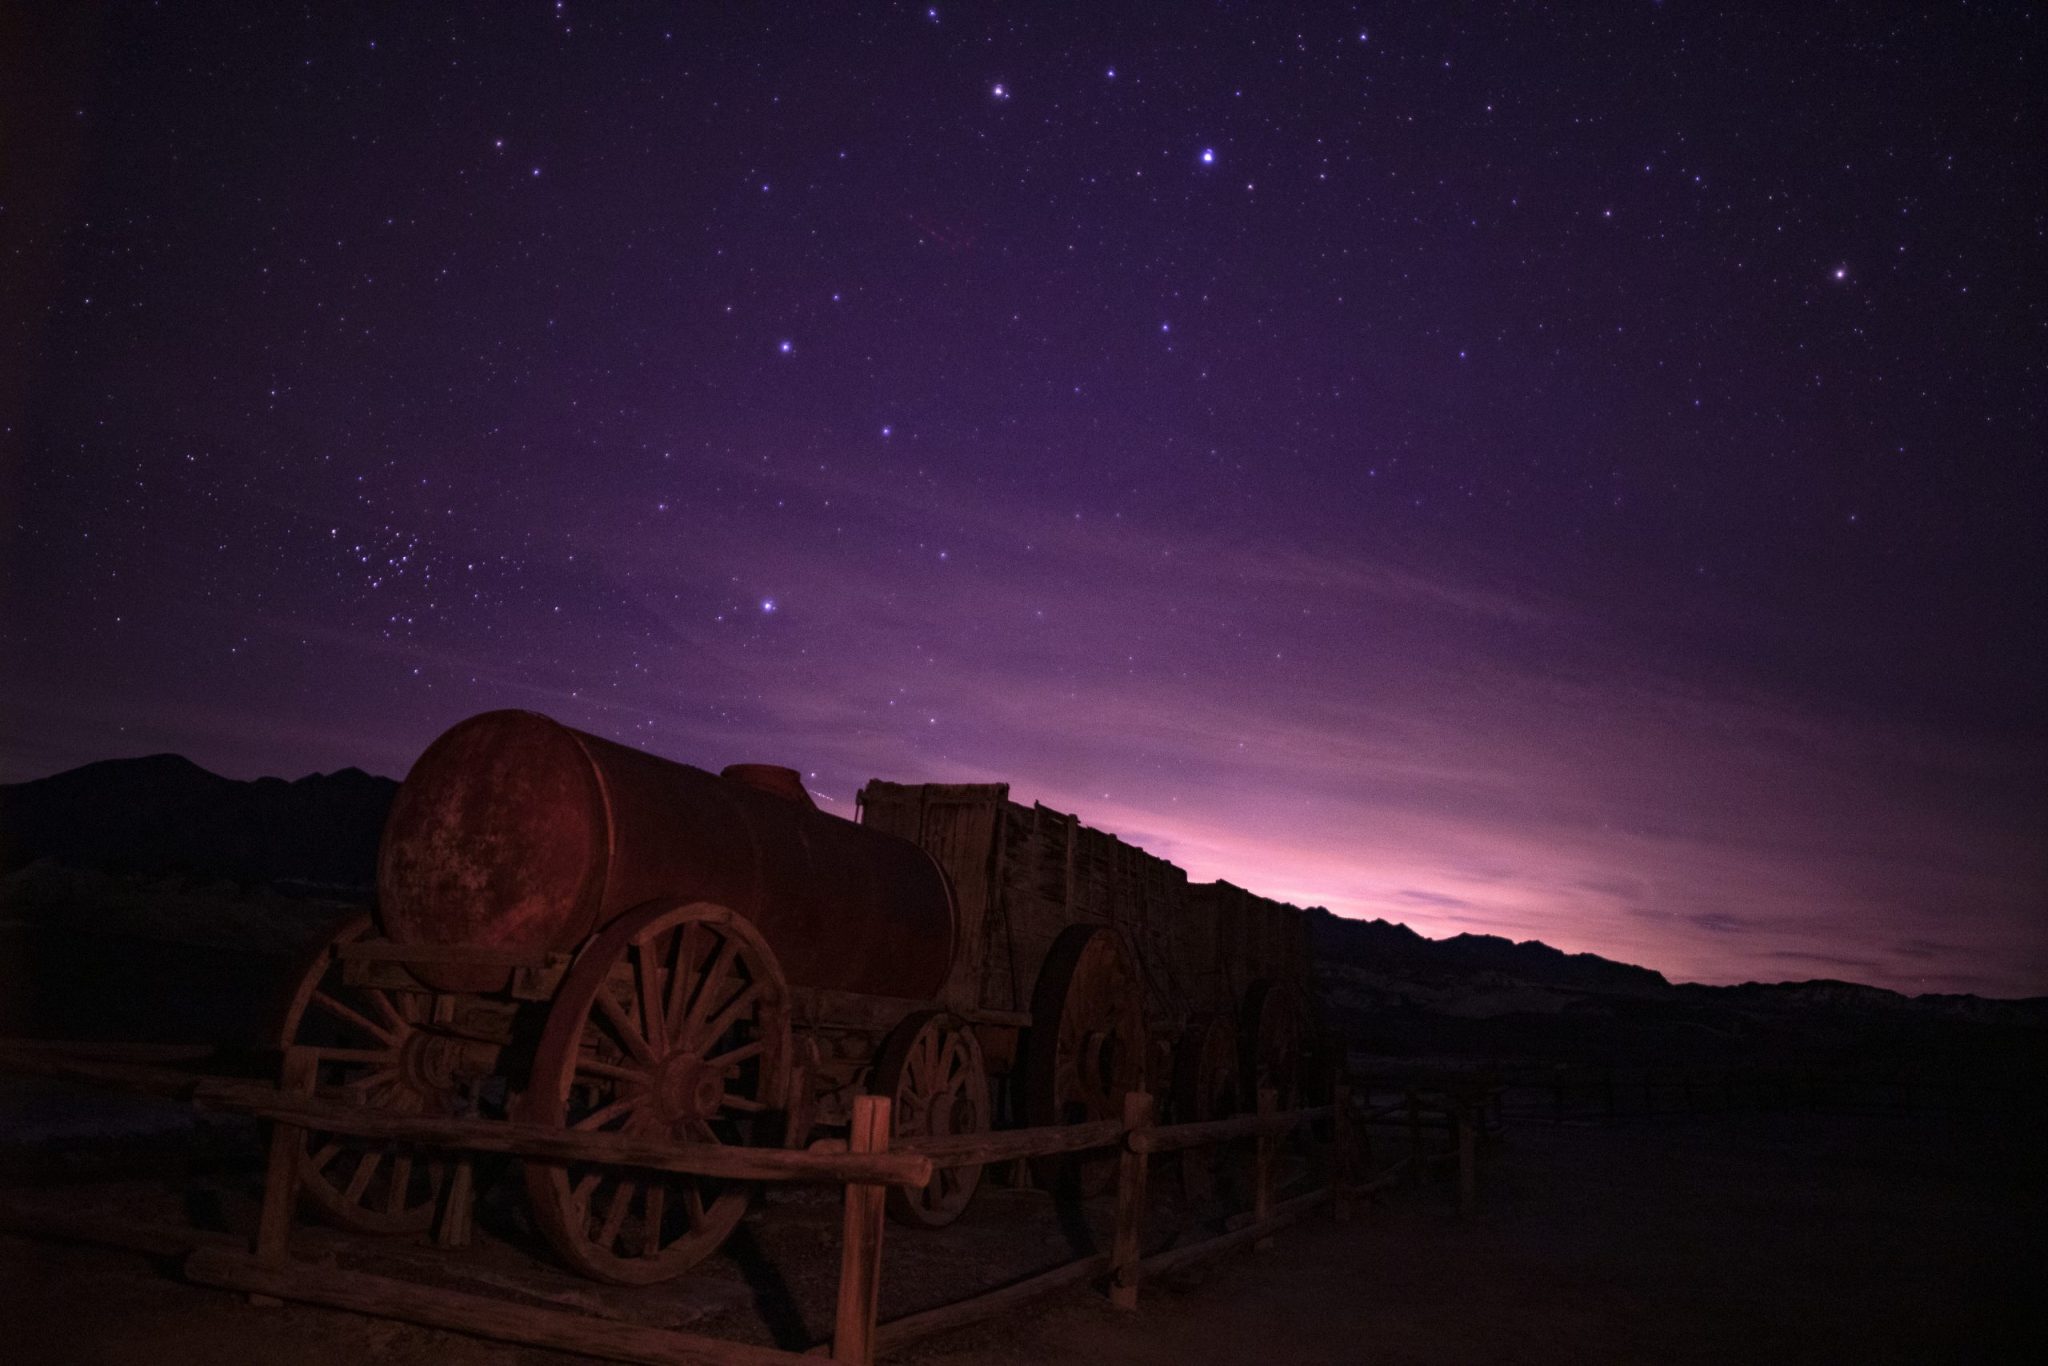 Dark Sky Association of Death Valley